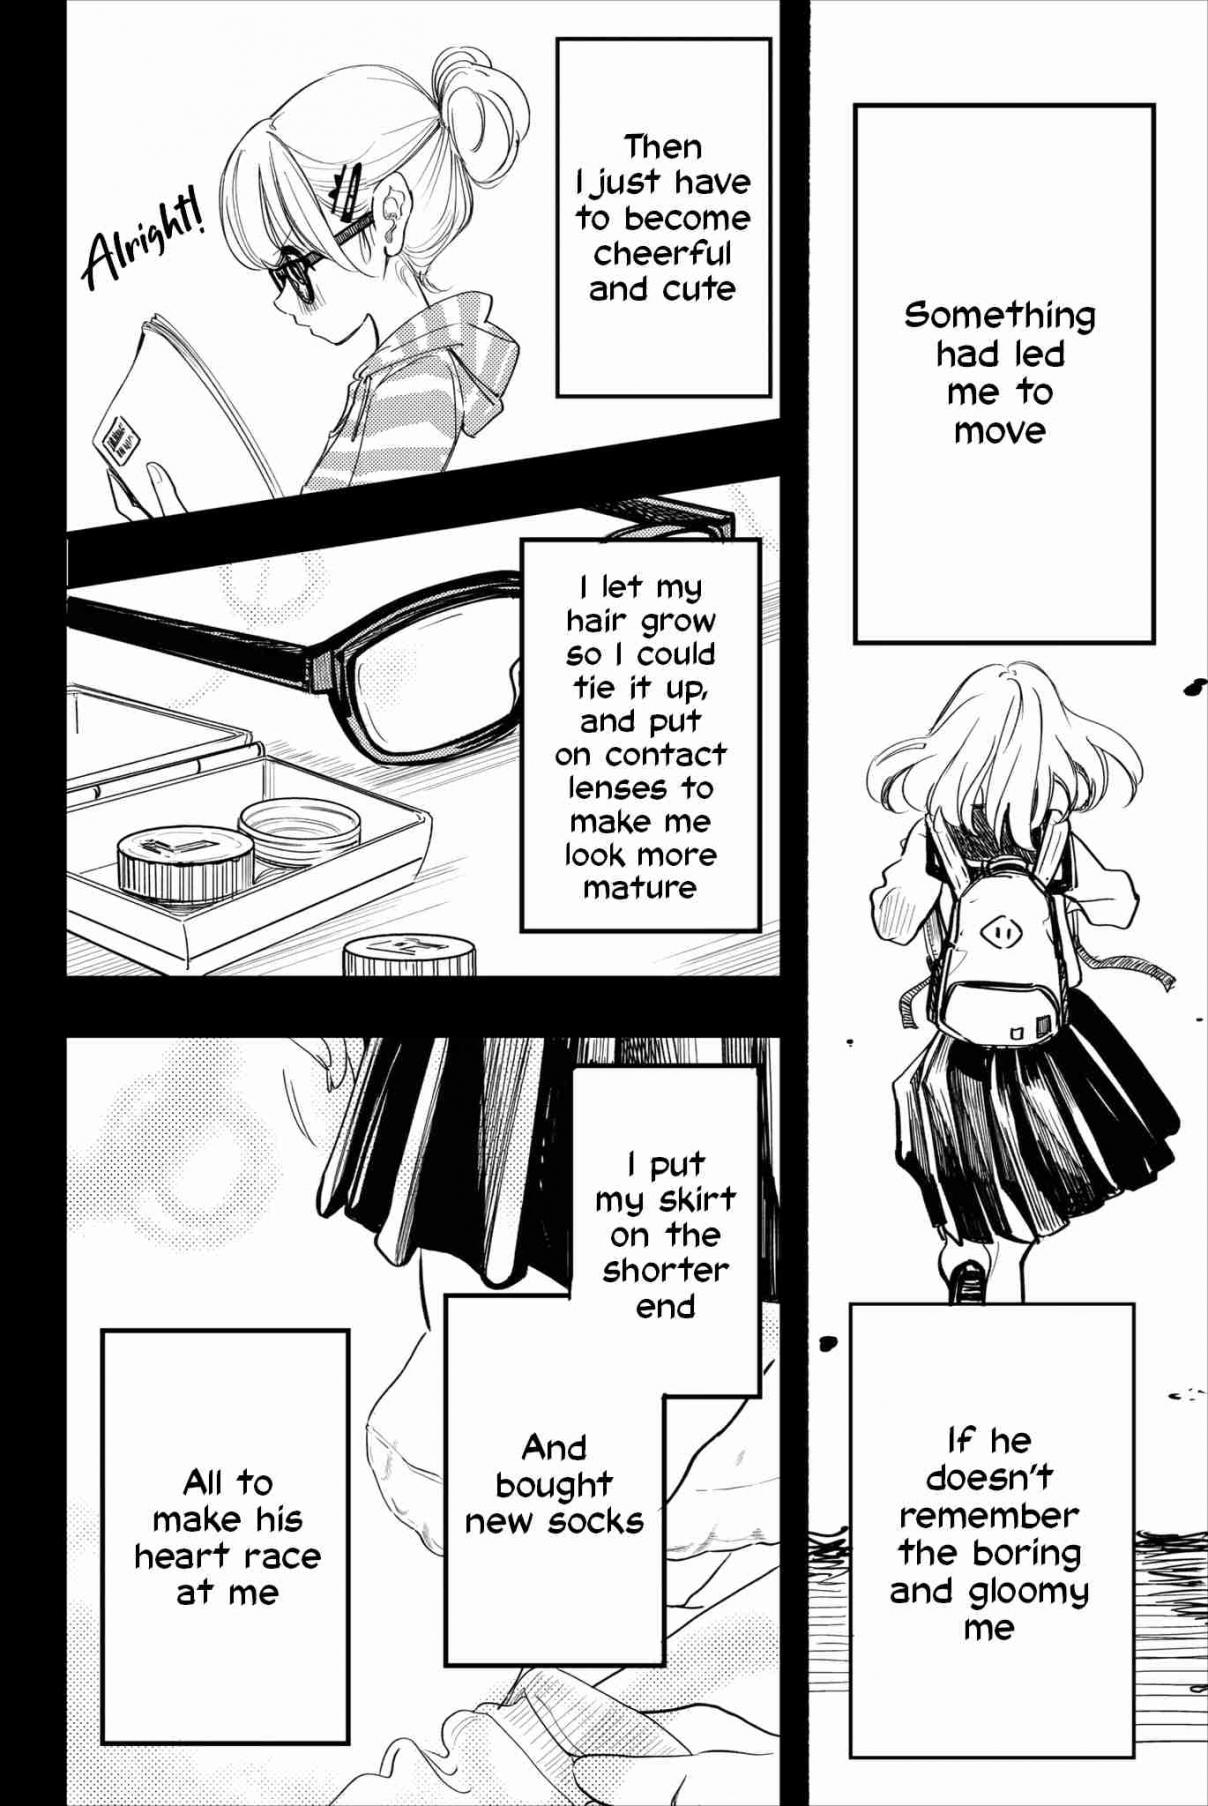 Koitsu, Ore no Koto Suki Nanoka?! Vol. 2 Ch. 25 Final Chapter Nishino san keeps her feelings